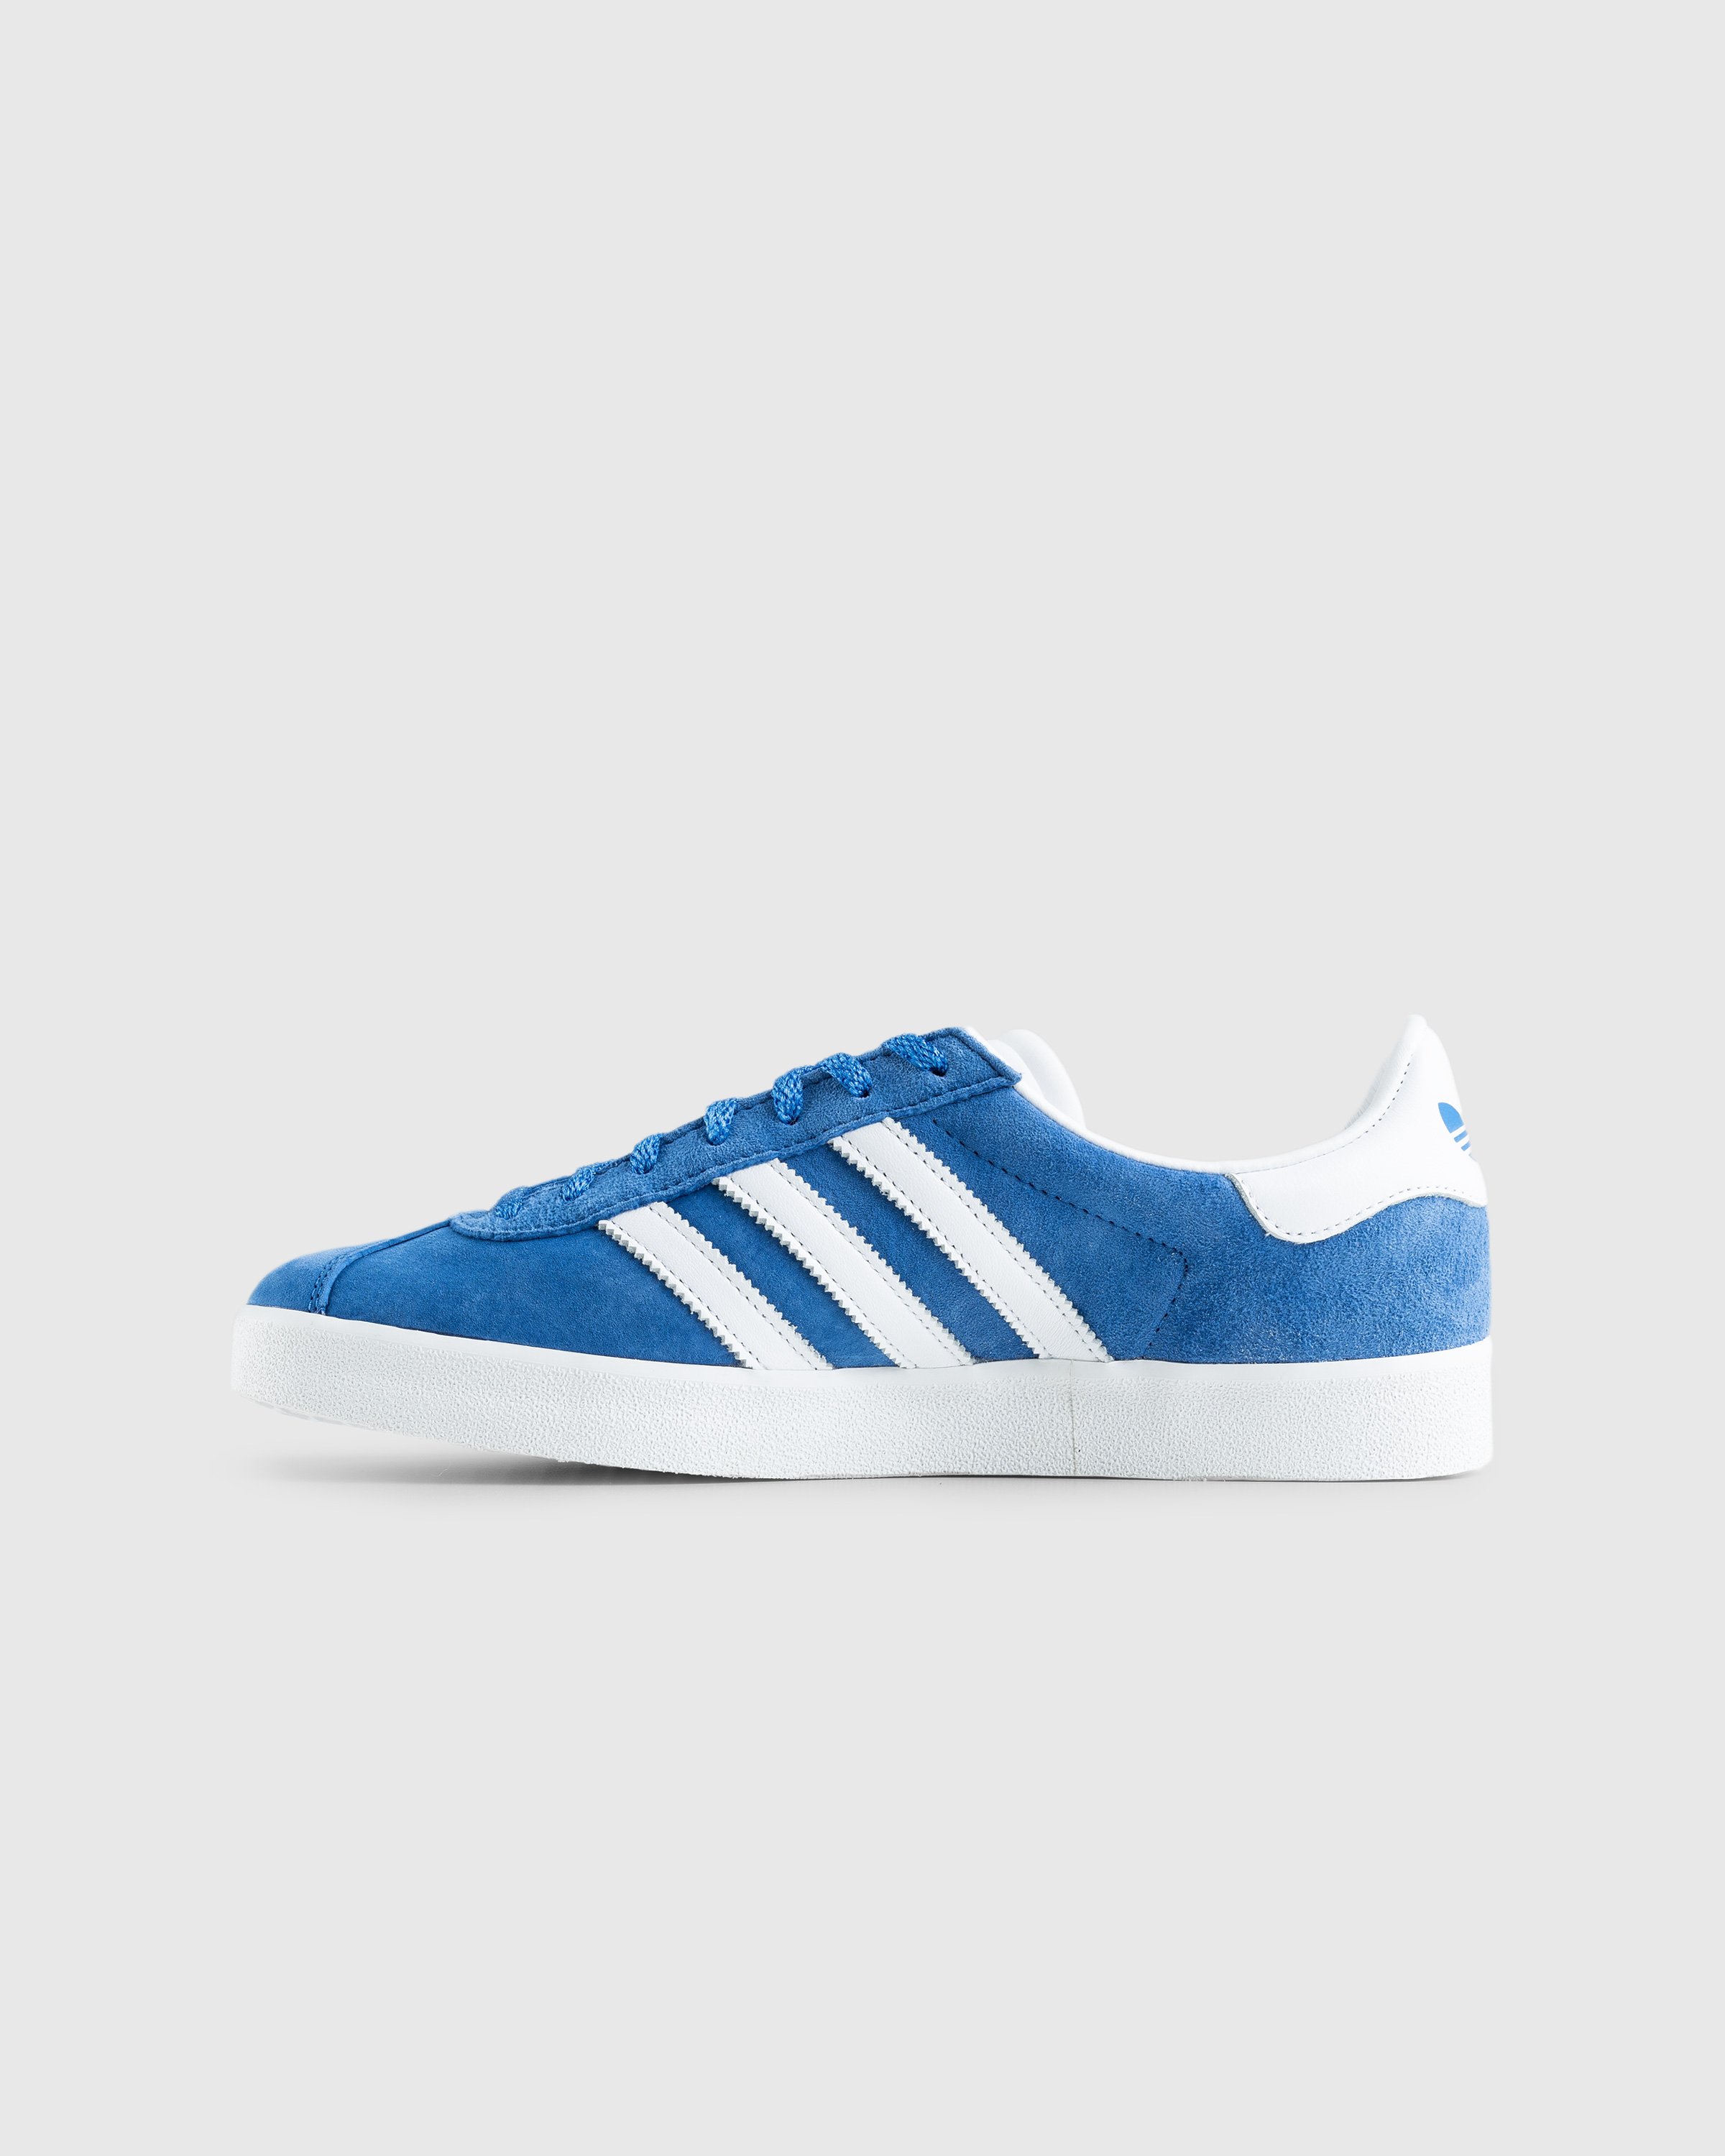 Adidas - Gazelle 85 Blue - Footwear - Blue - Image 2